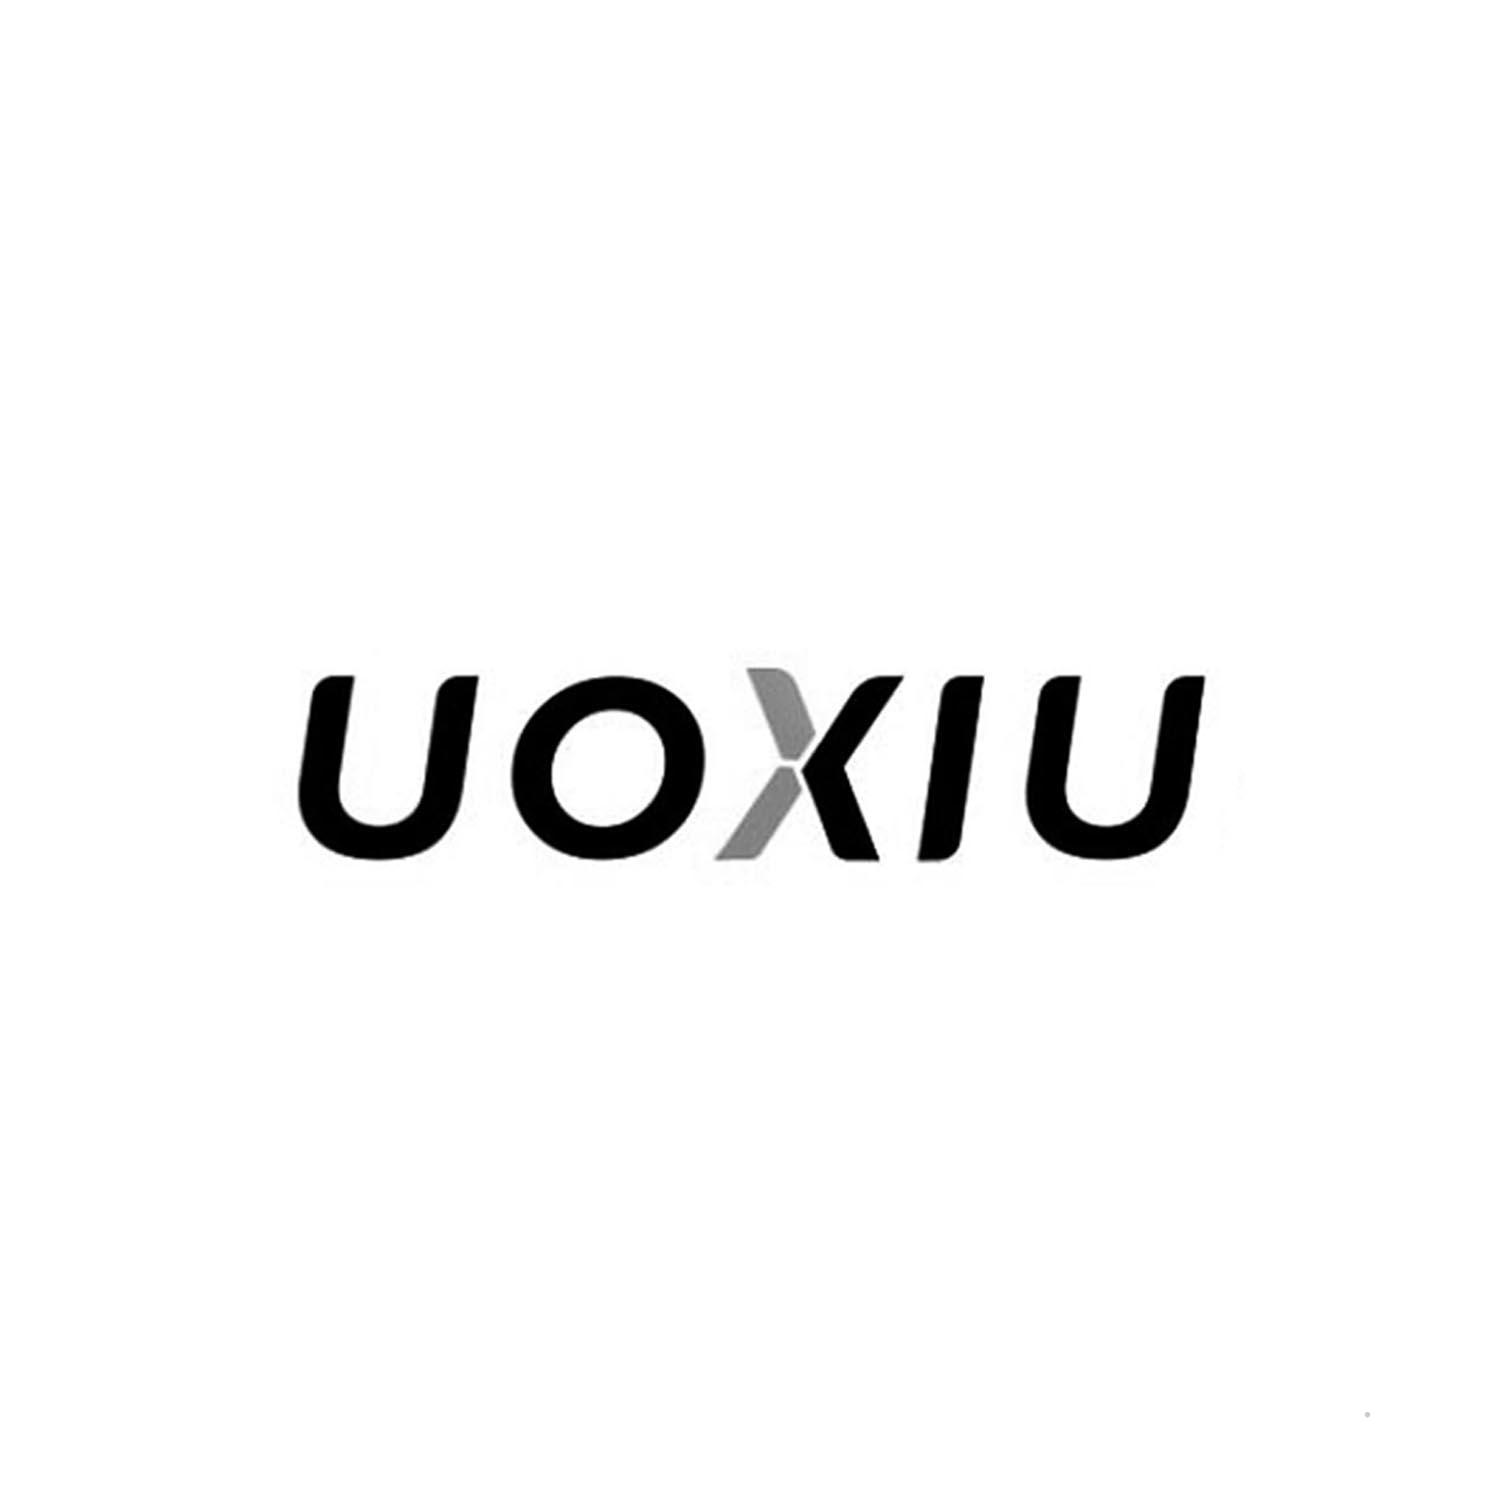 UOXIU